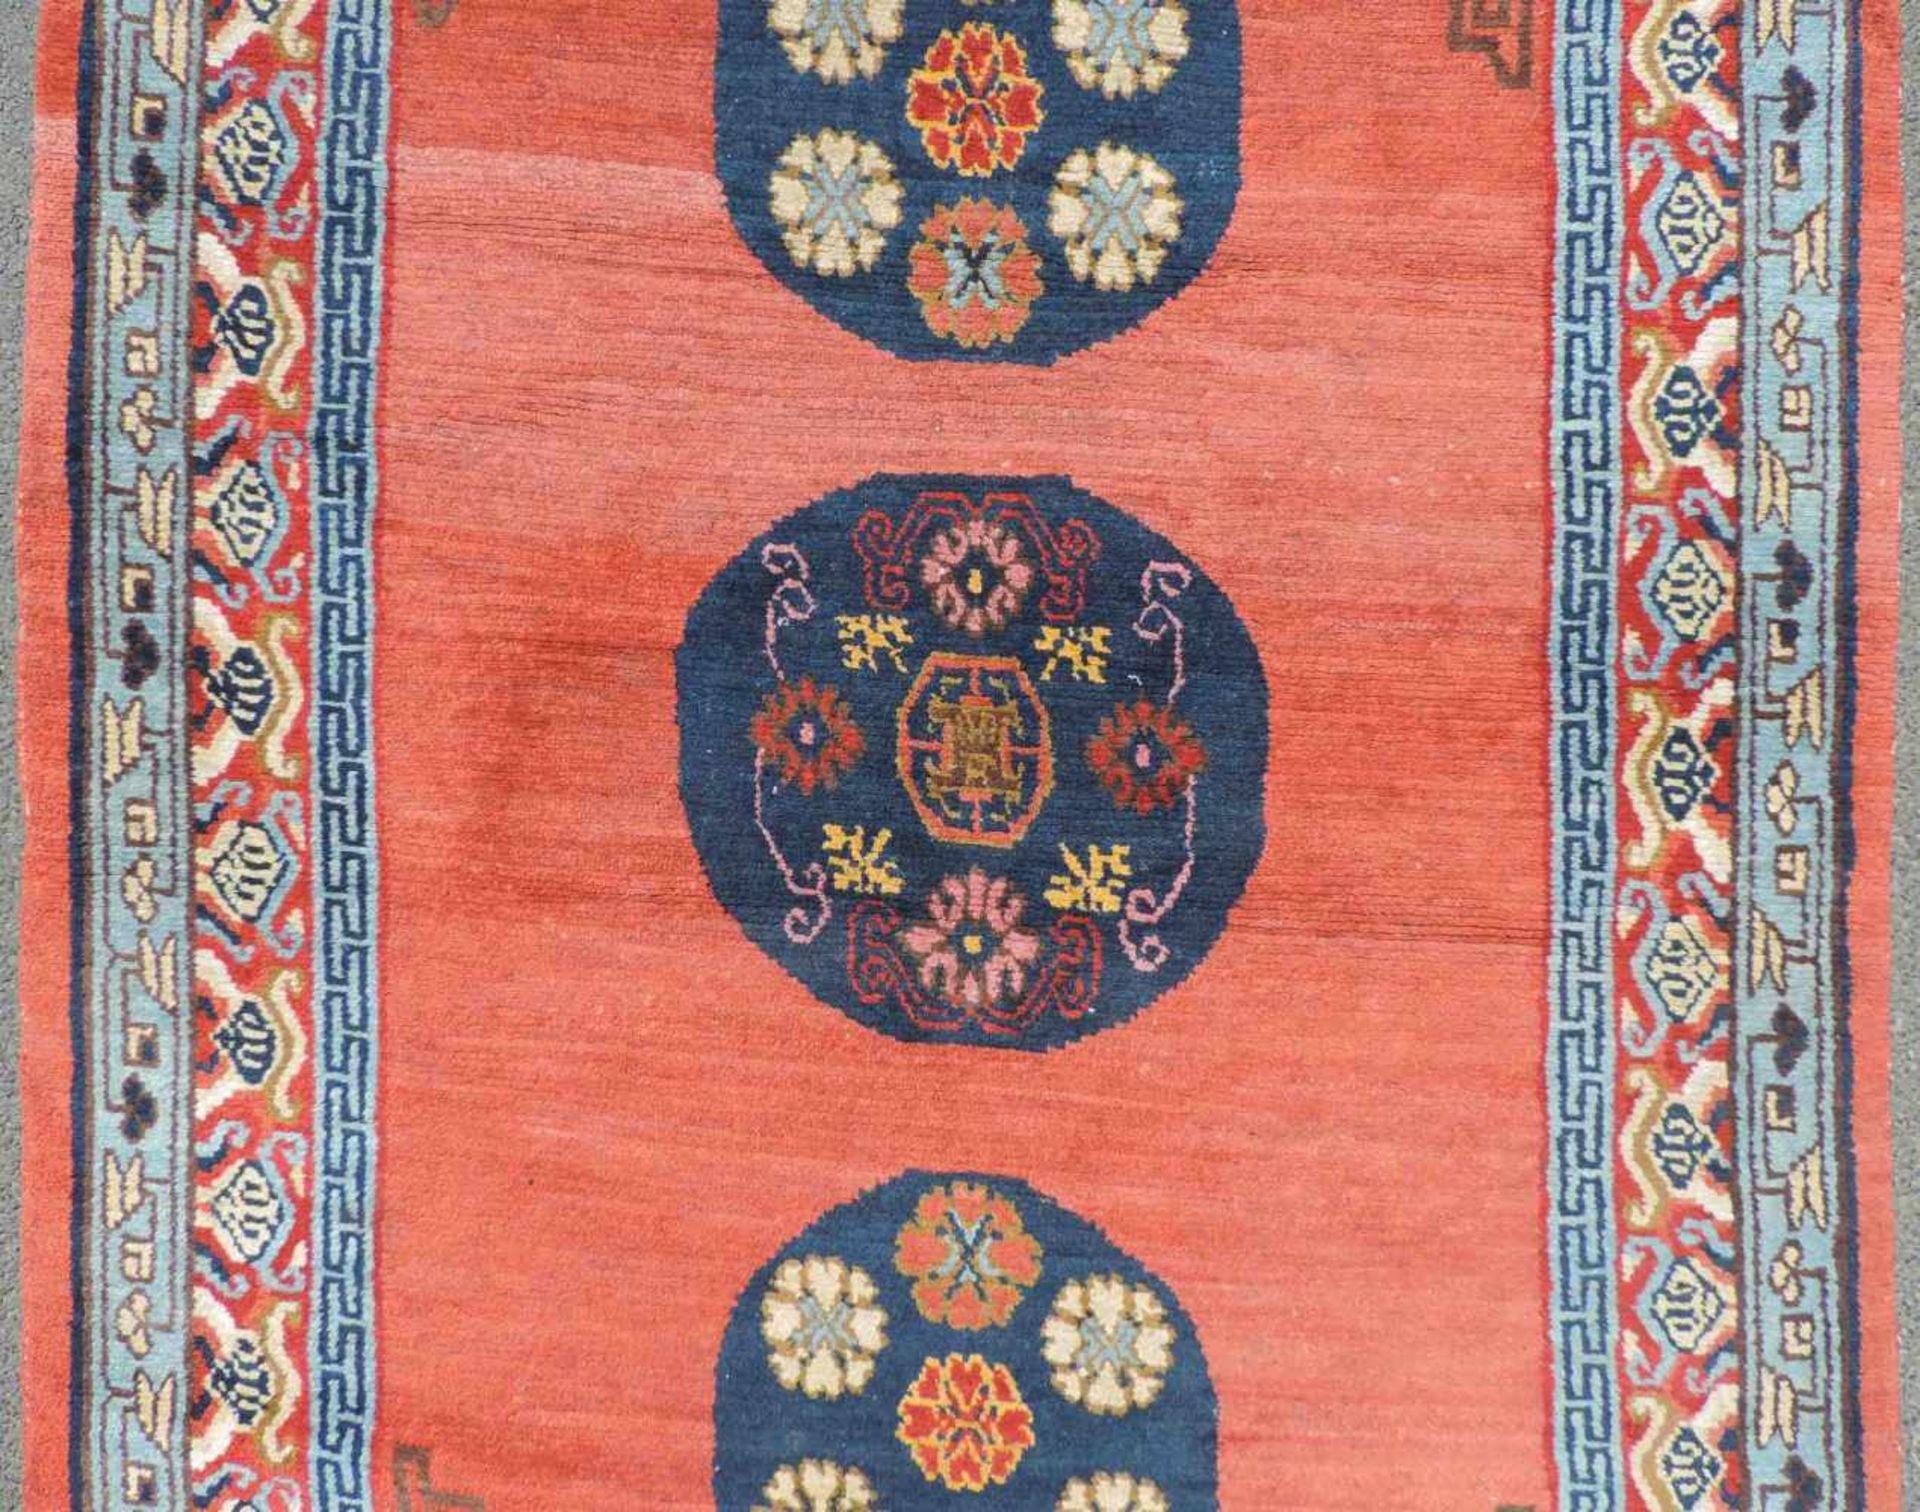 Khaden Meditationsteppich. Nepal / Tibet, Mitte 20. Jahrhundert. 192 cmx 126 cm. Handgeknüpft. Wolle - Bild 3 aus 6